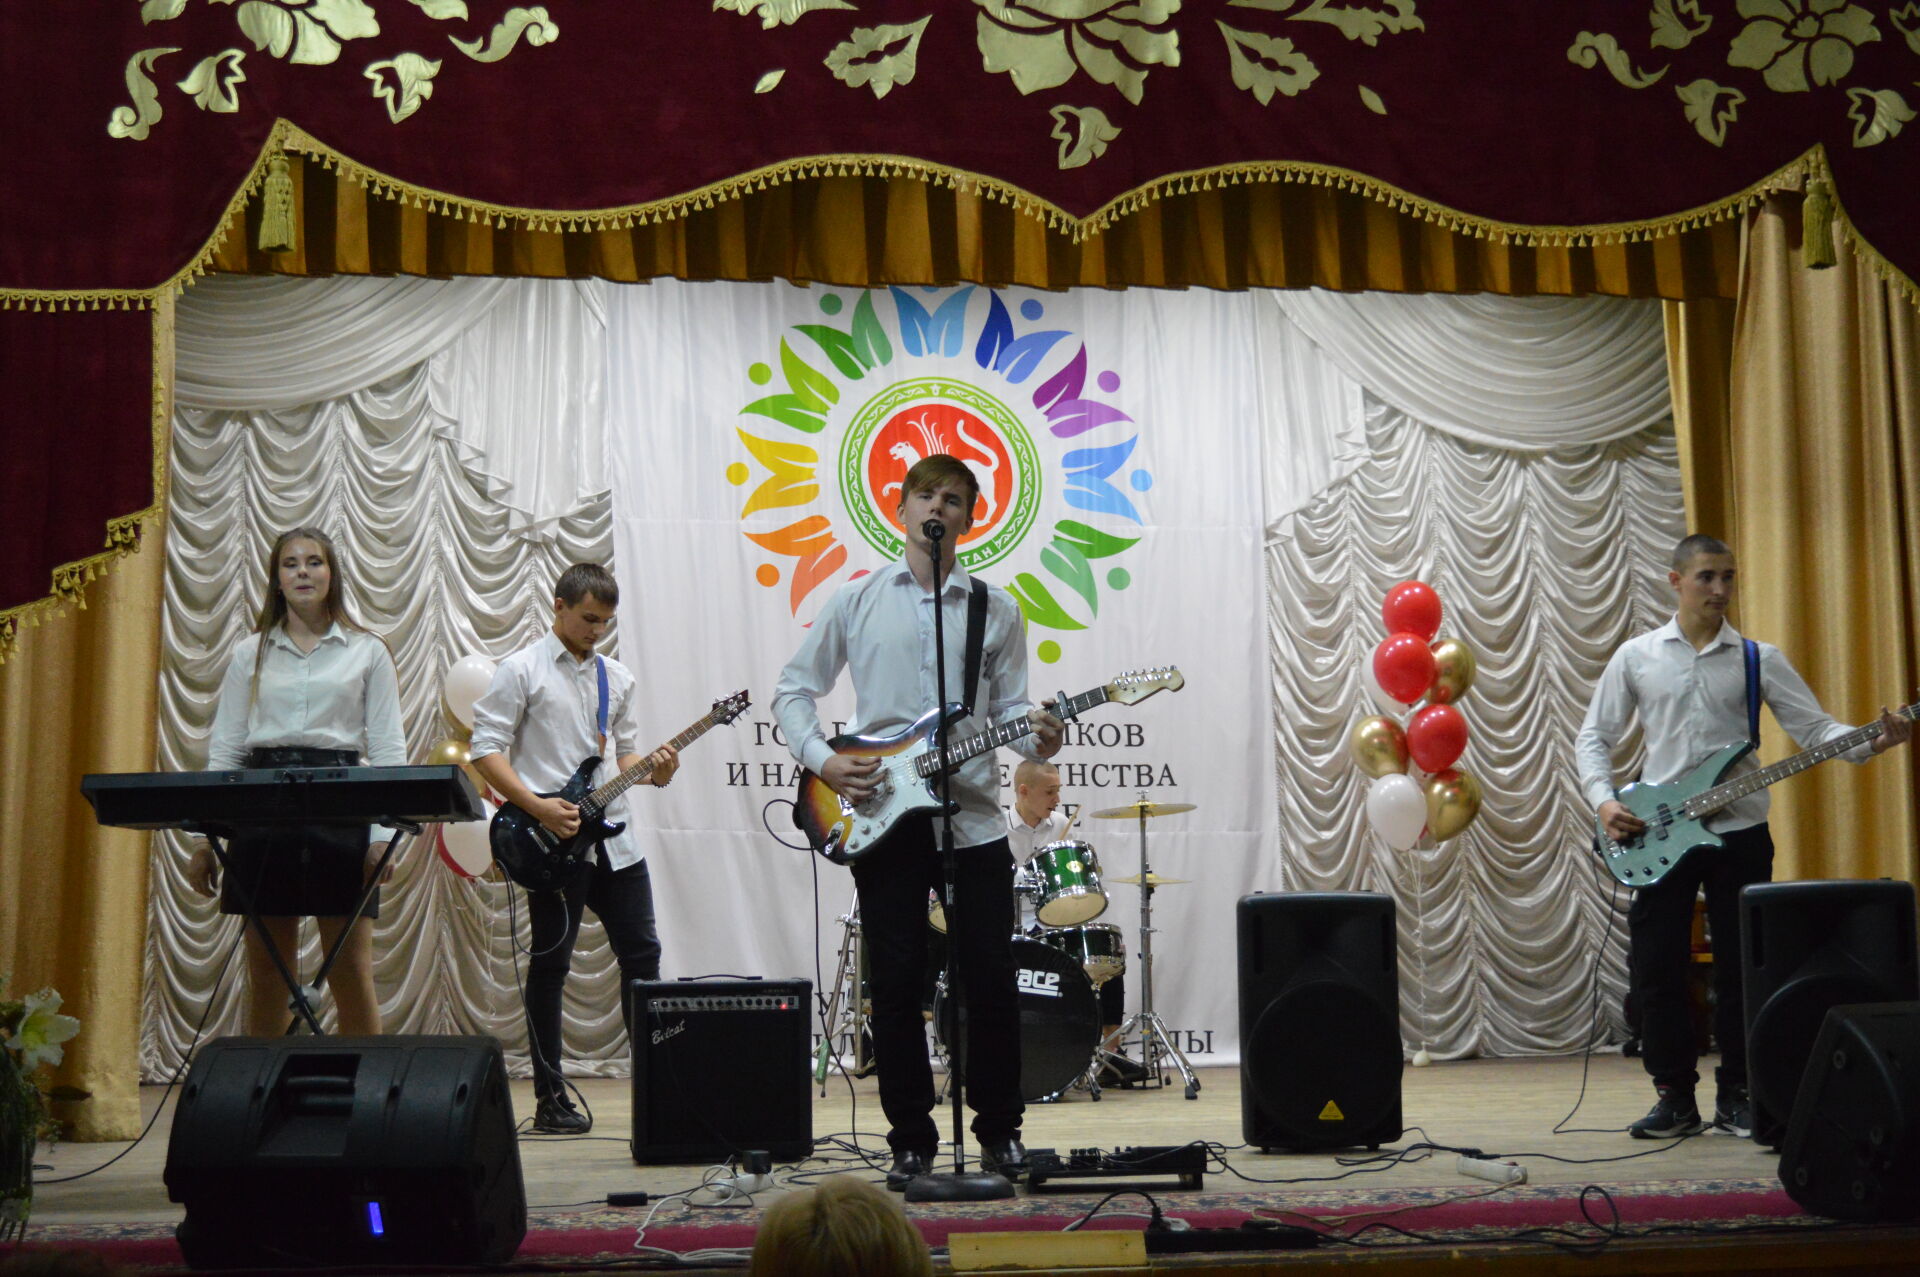 Работников образования поздравили с профессиональным праздником в РДК